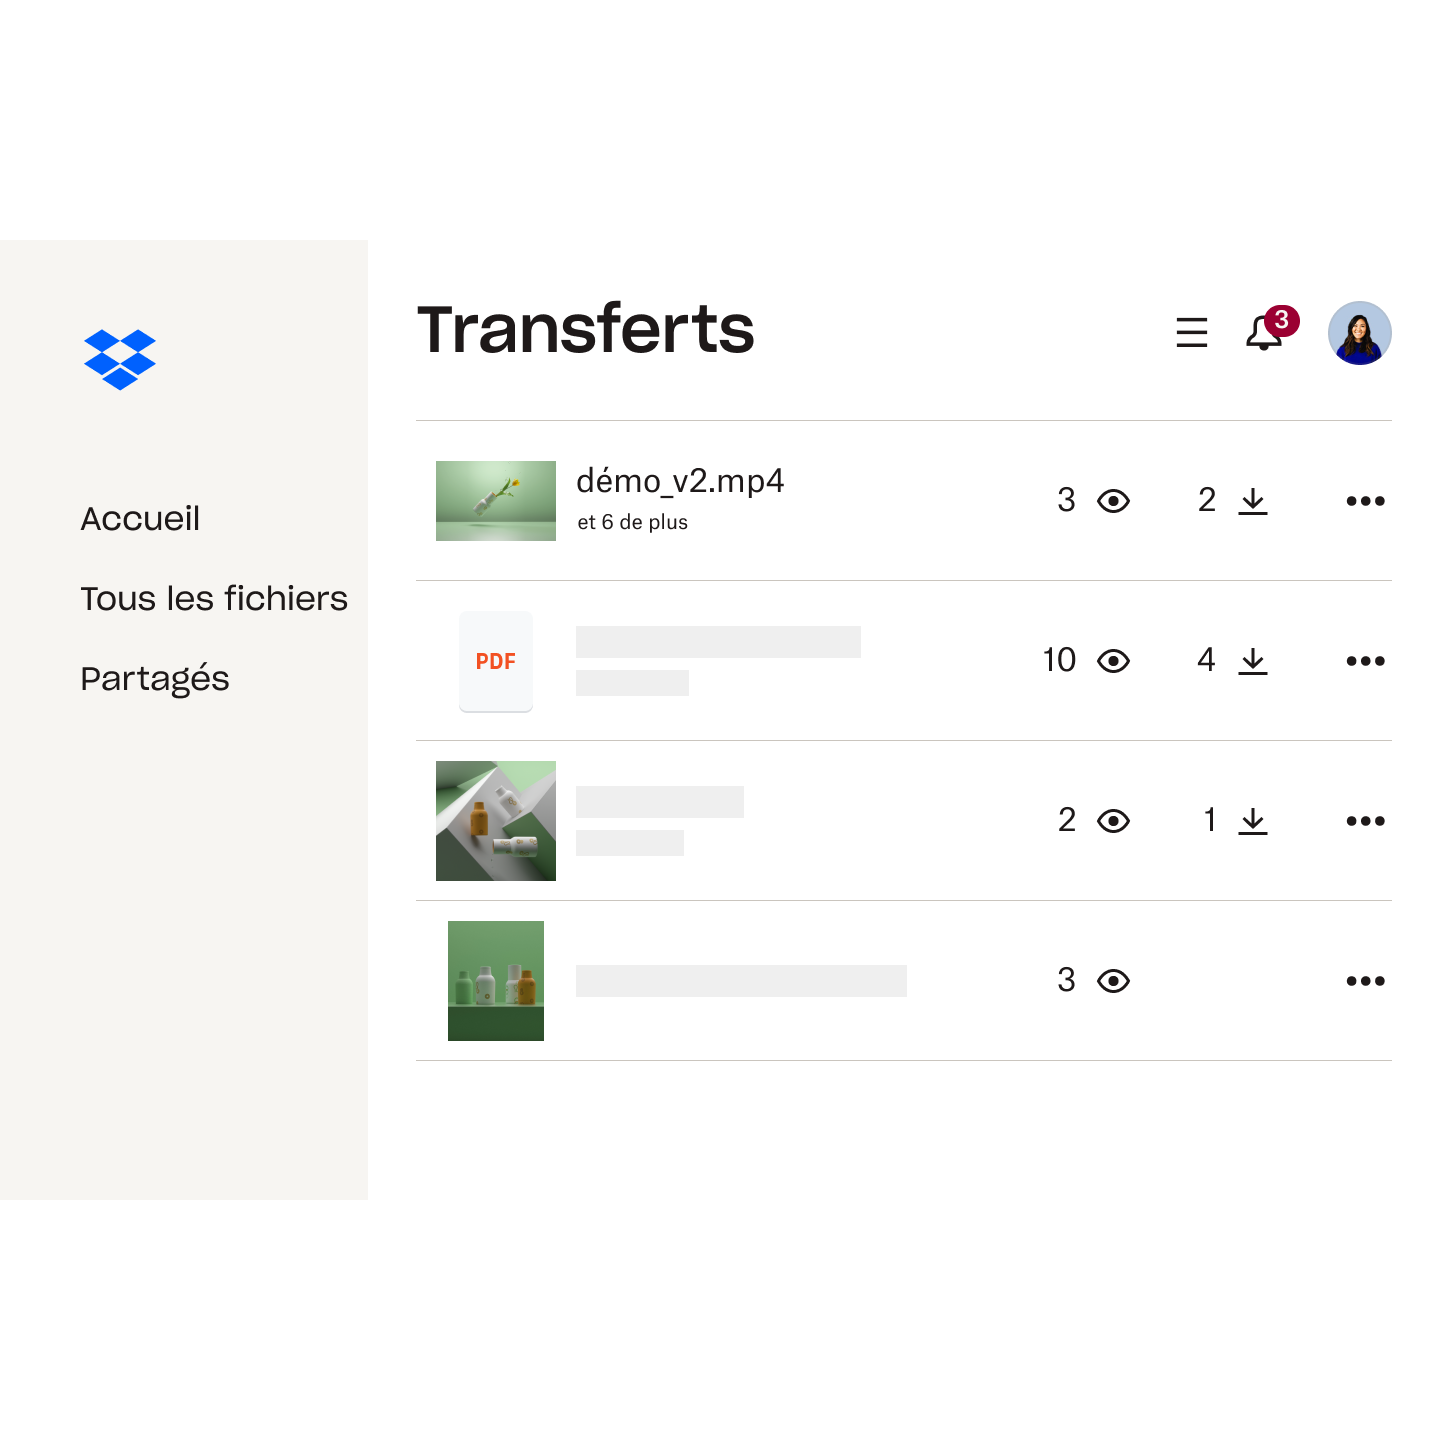 Liste de fichiers dans Dropbox Transfer, avec nombre de visites et de téléchargements